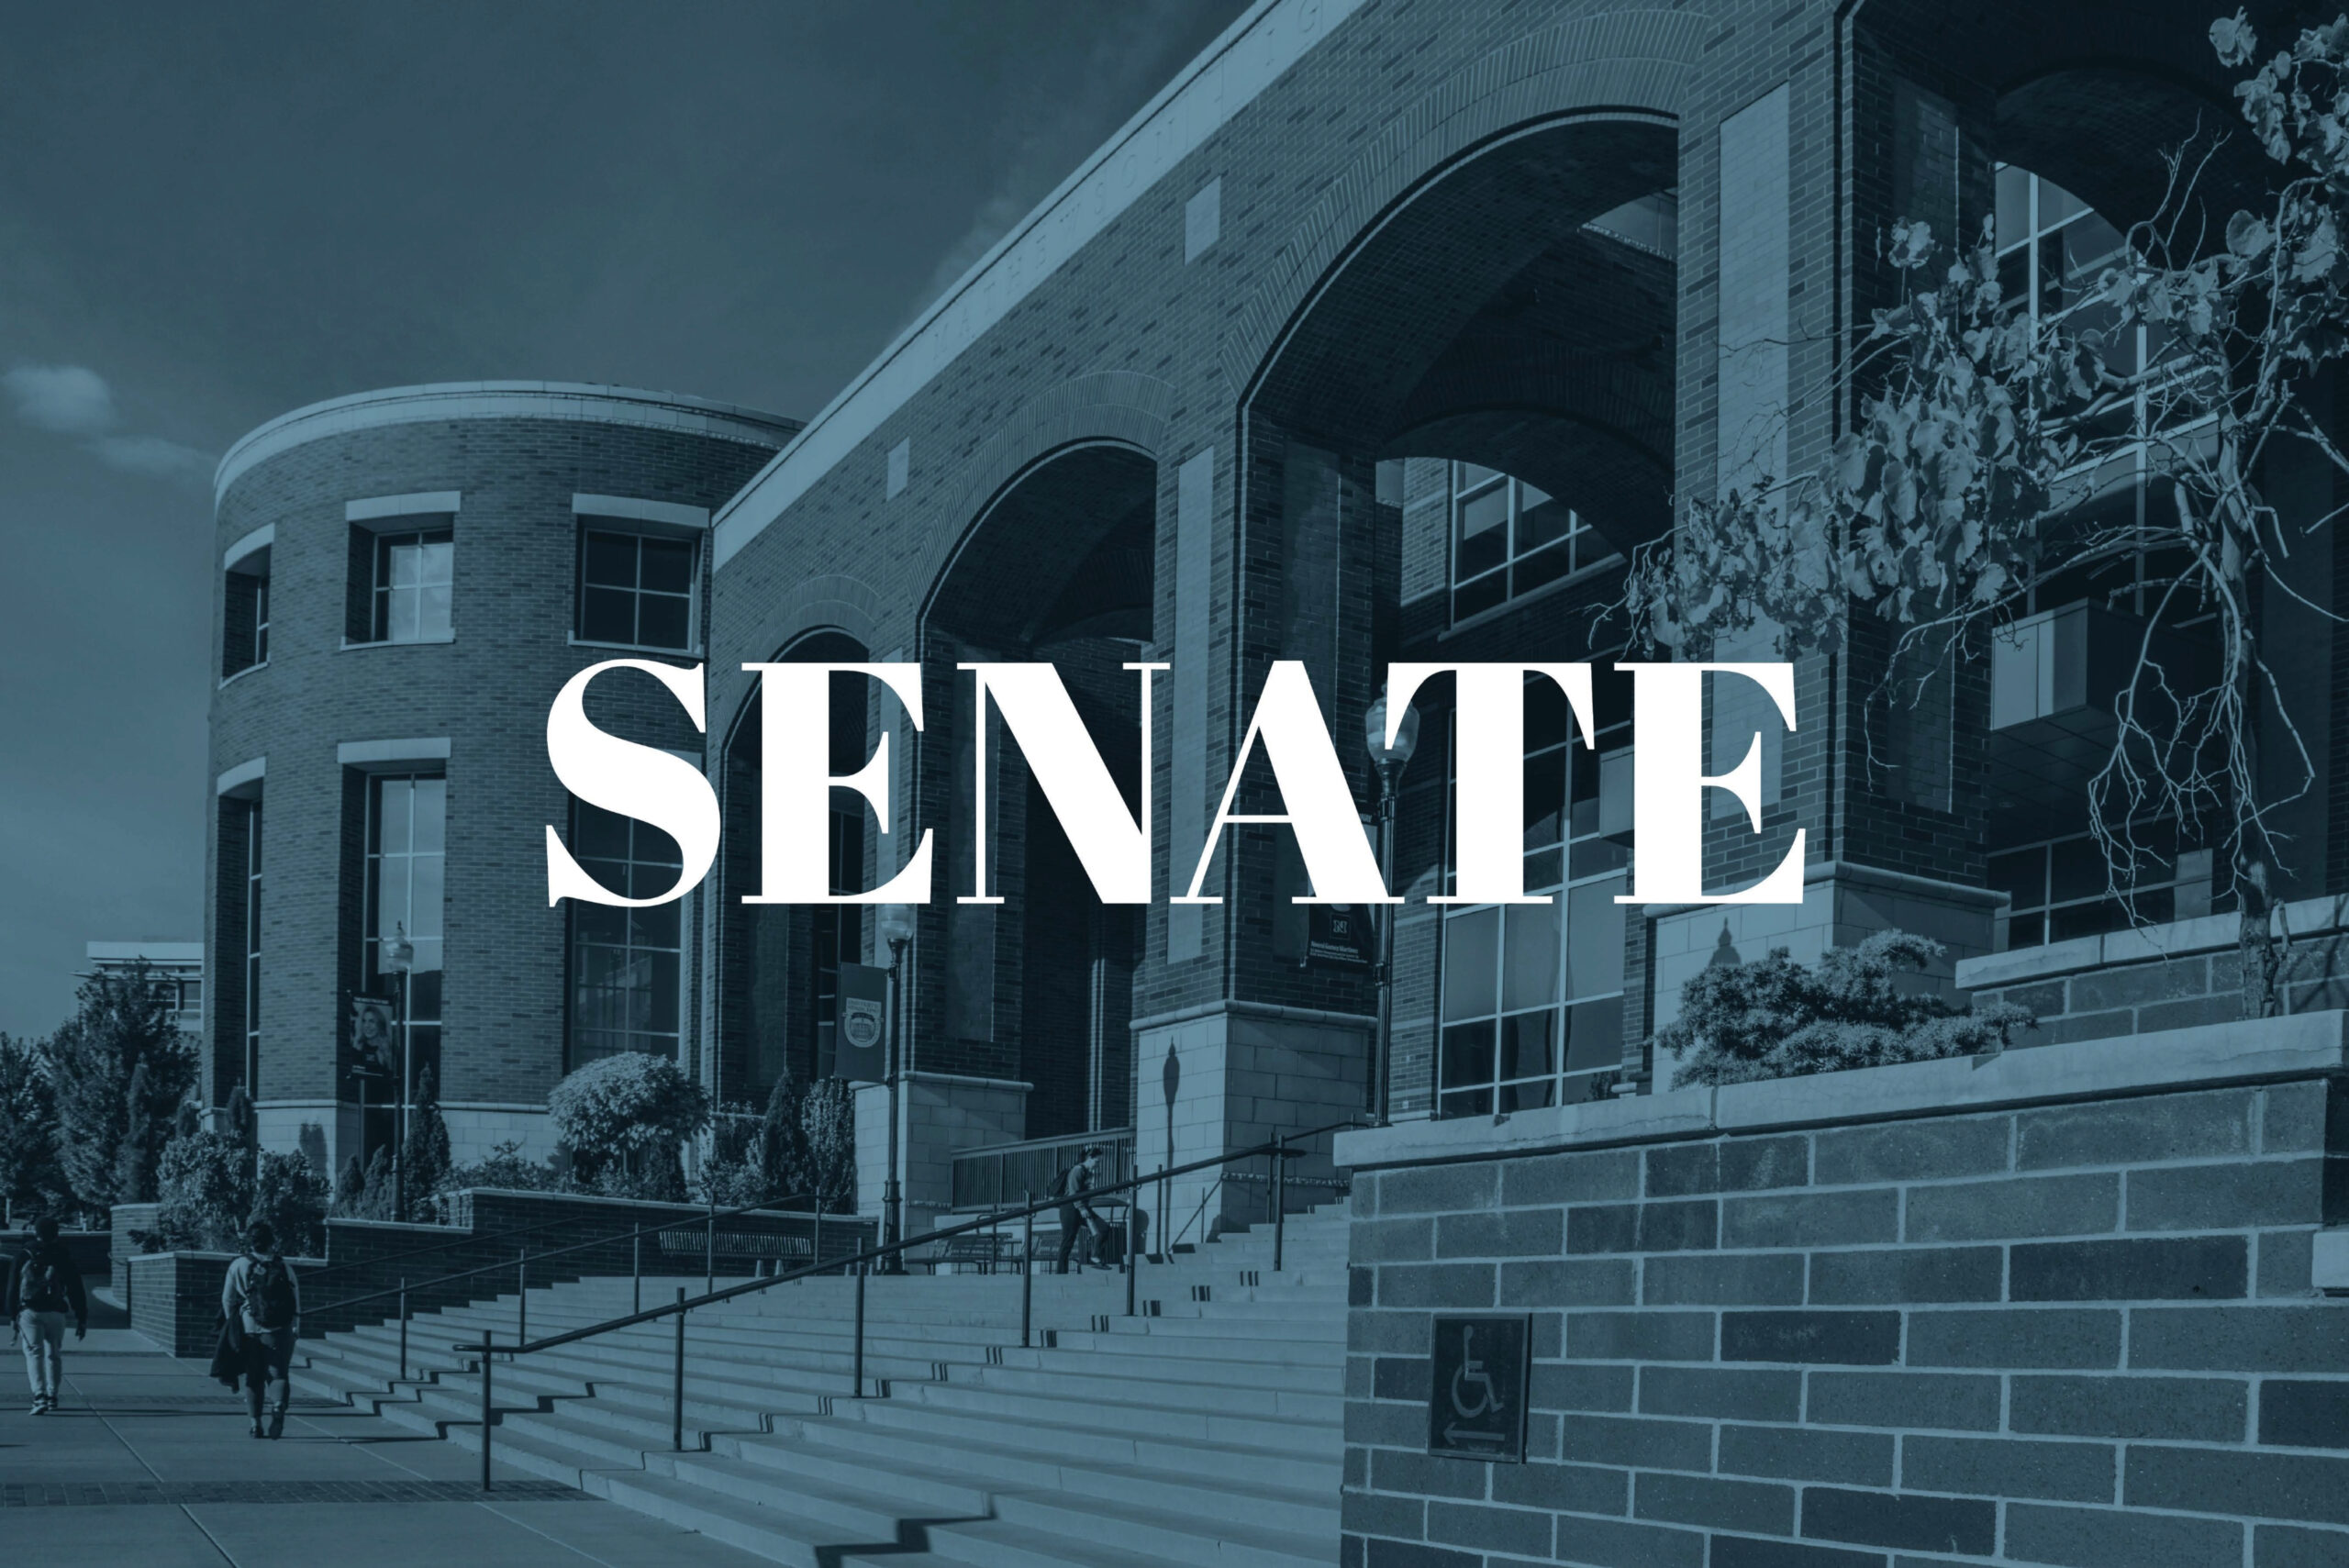 SENADO 1/31: Se aprueba proyecto de ley para destituir a secretario de los estatutos de los estudiantes asociados de la Universidad de Nevada, Reno